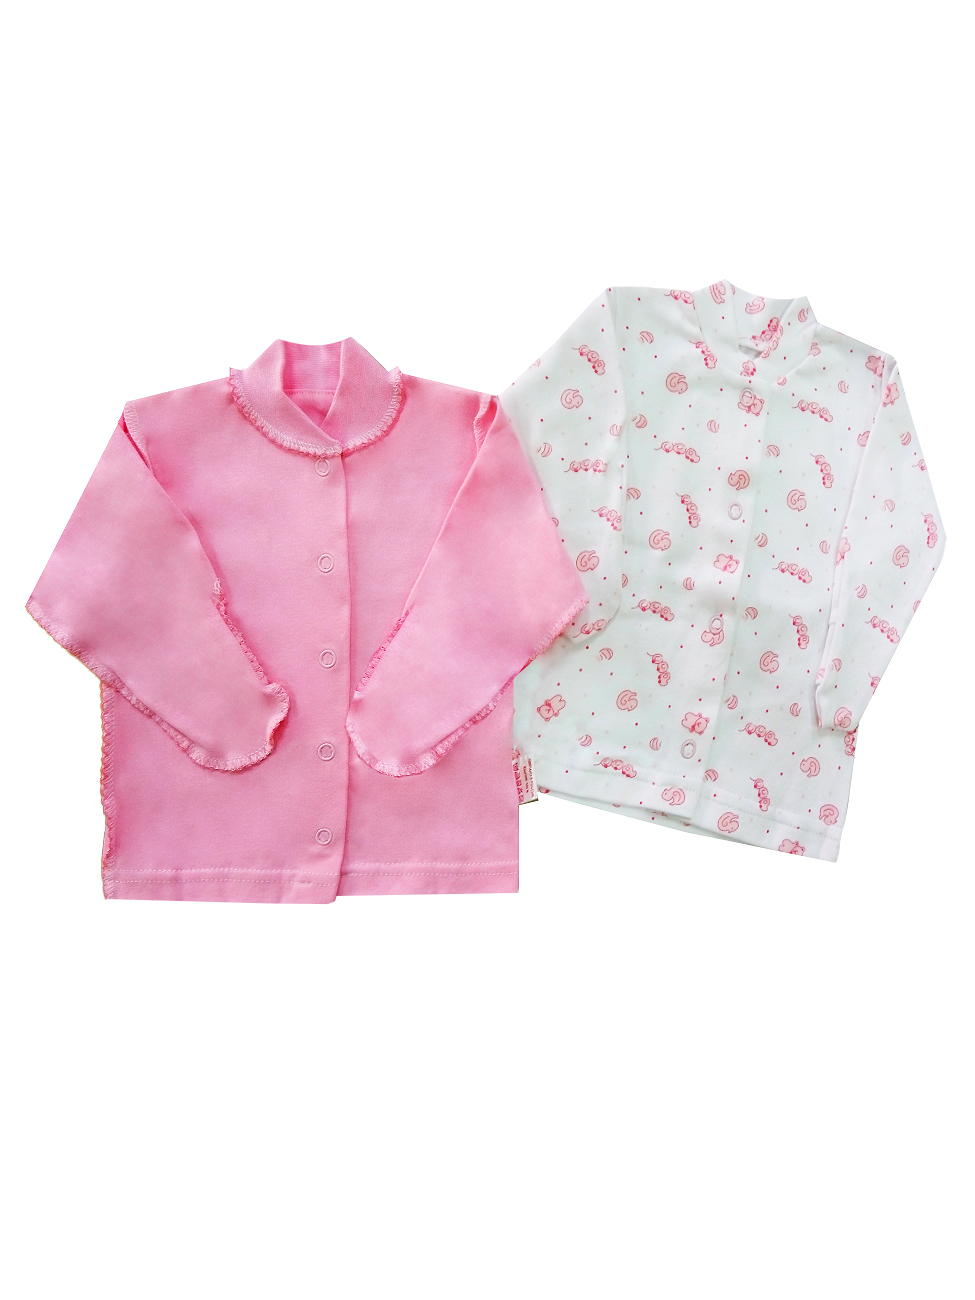 Комплект одежды для девочек Желтый кот  Цвет розовый размер 56